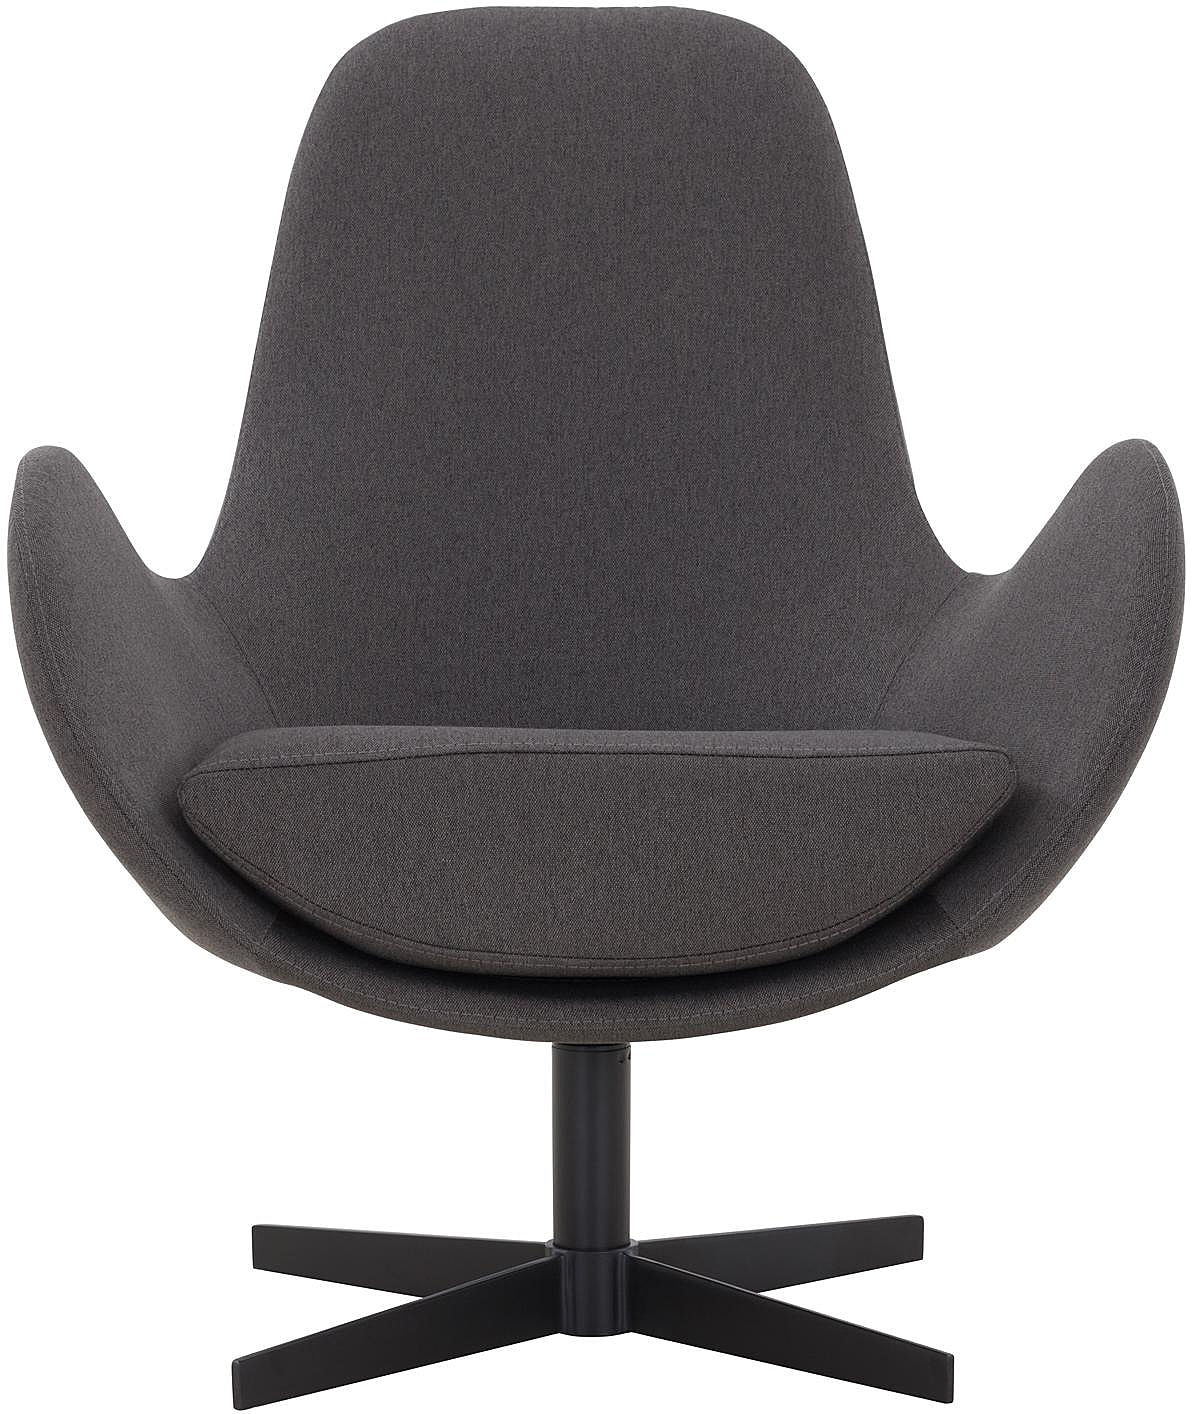 SalesFever Sessel mit Drehfunktion und dickem Dunkelgrau extra in Sitzkissen